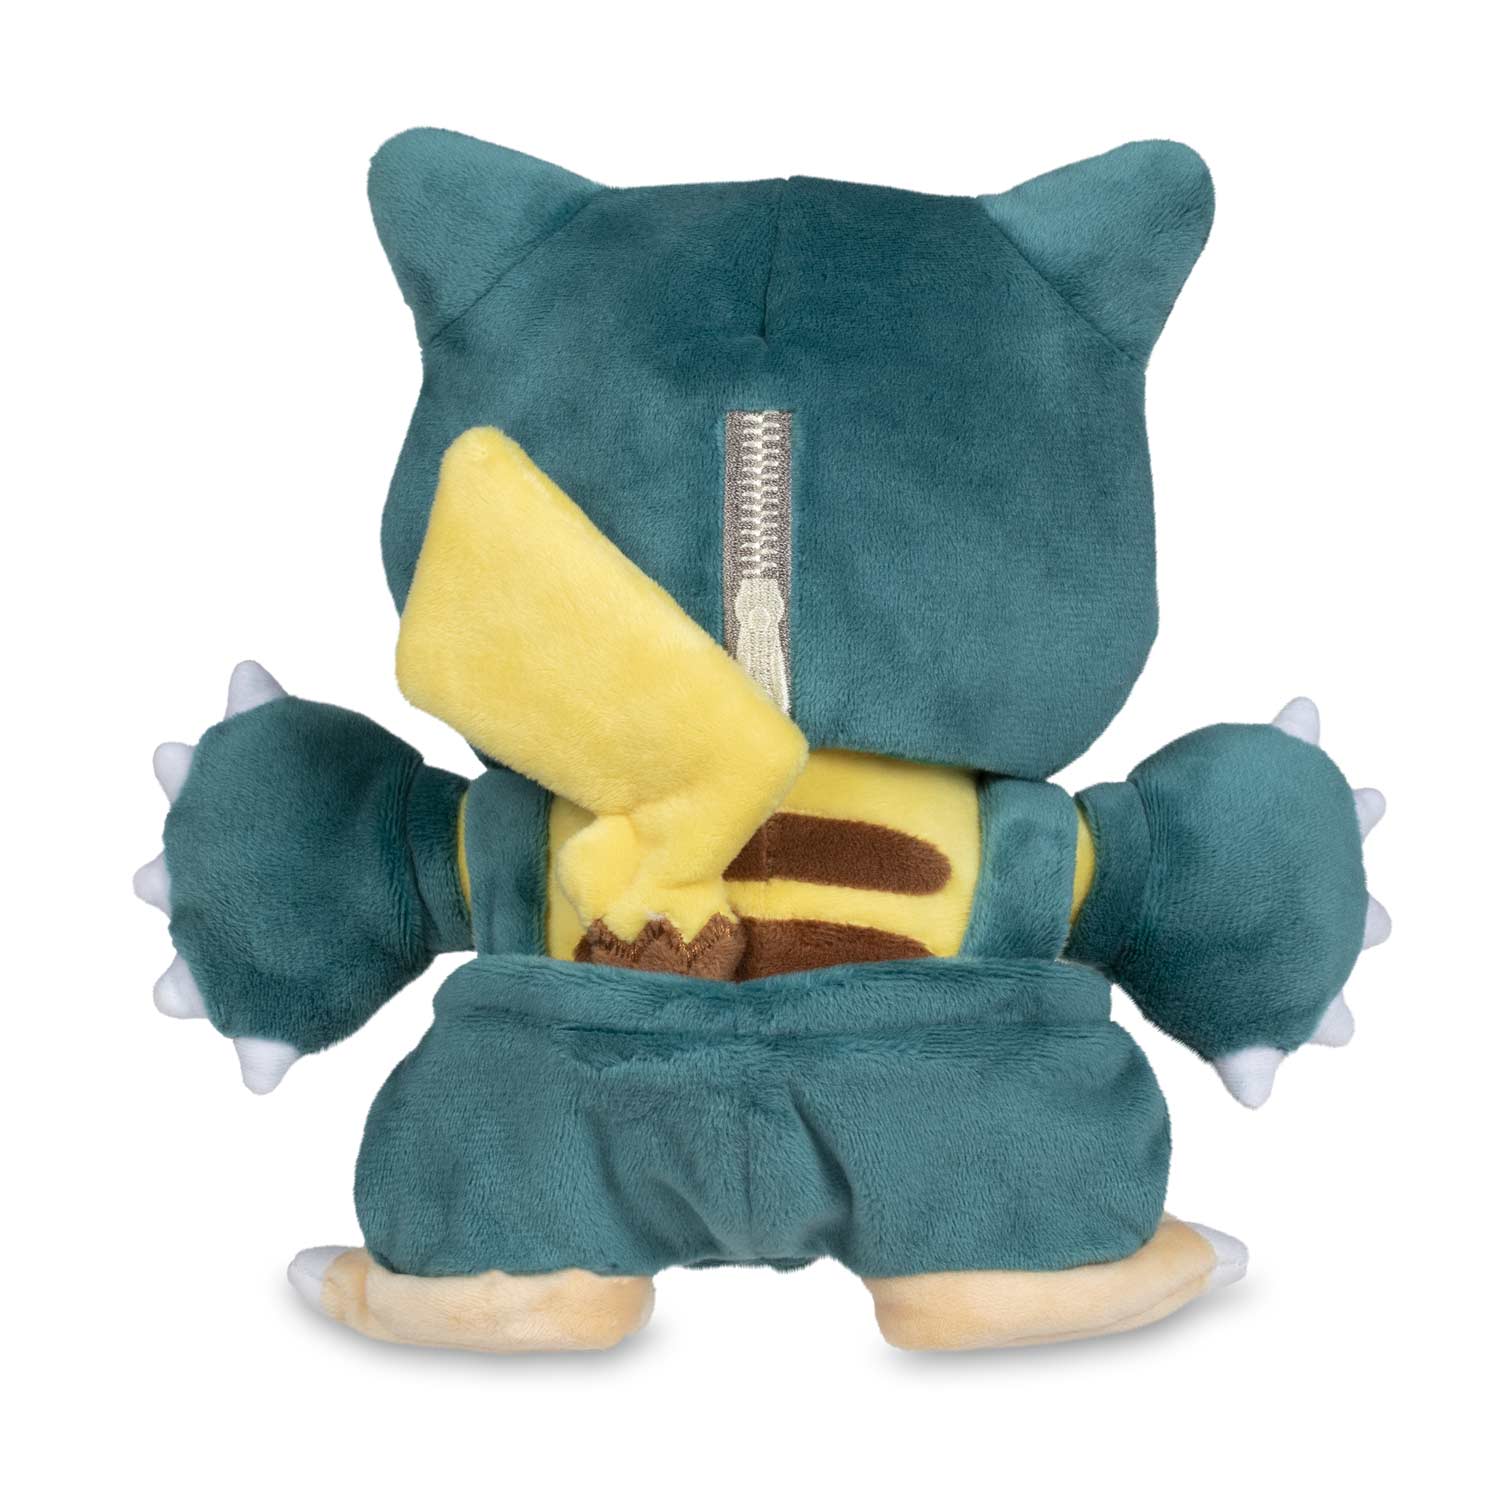 pikachu in snorlax costume plush